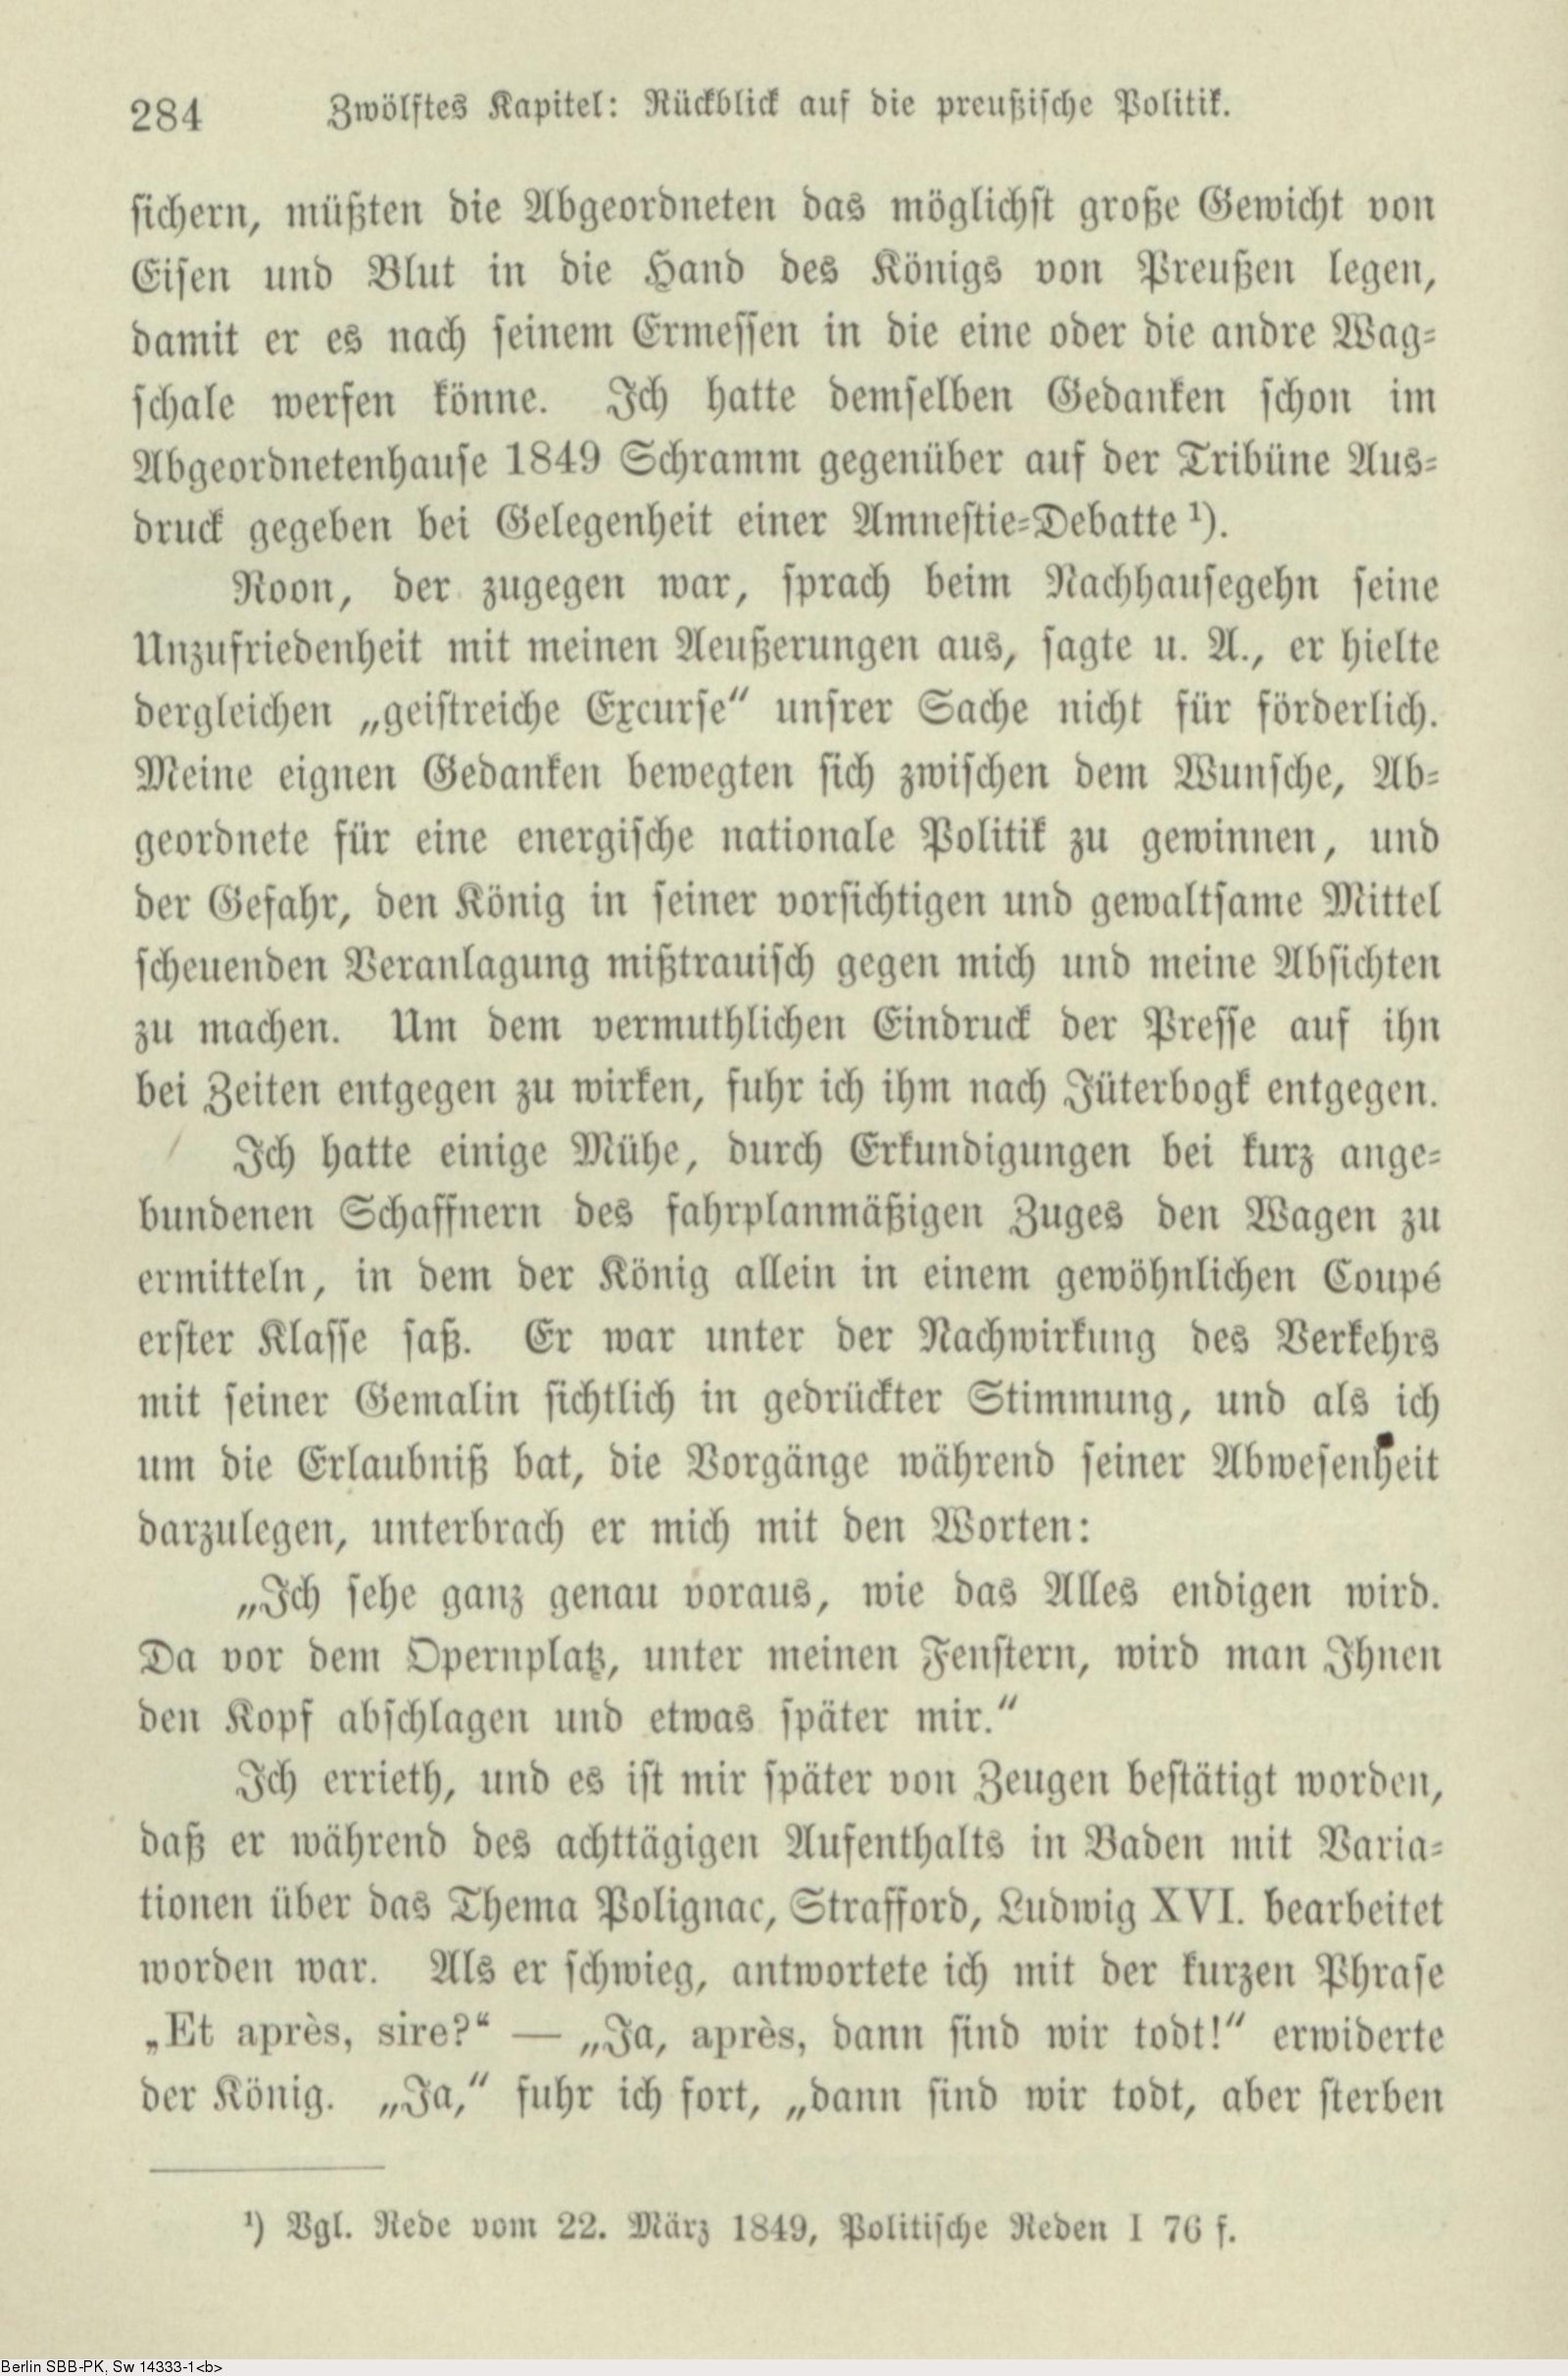 Politisk Hare Arbejdsgiver Deutsches Textarchiv – Bismarck, Otto von: Gedanken und Erinnerungen. Bd.  1. Stuttgart, 1898.